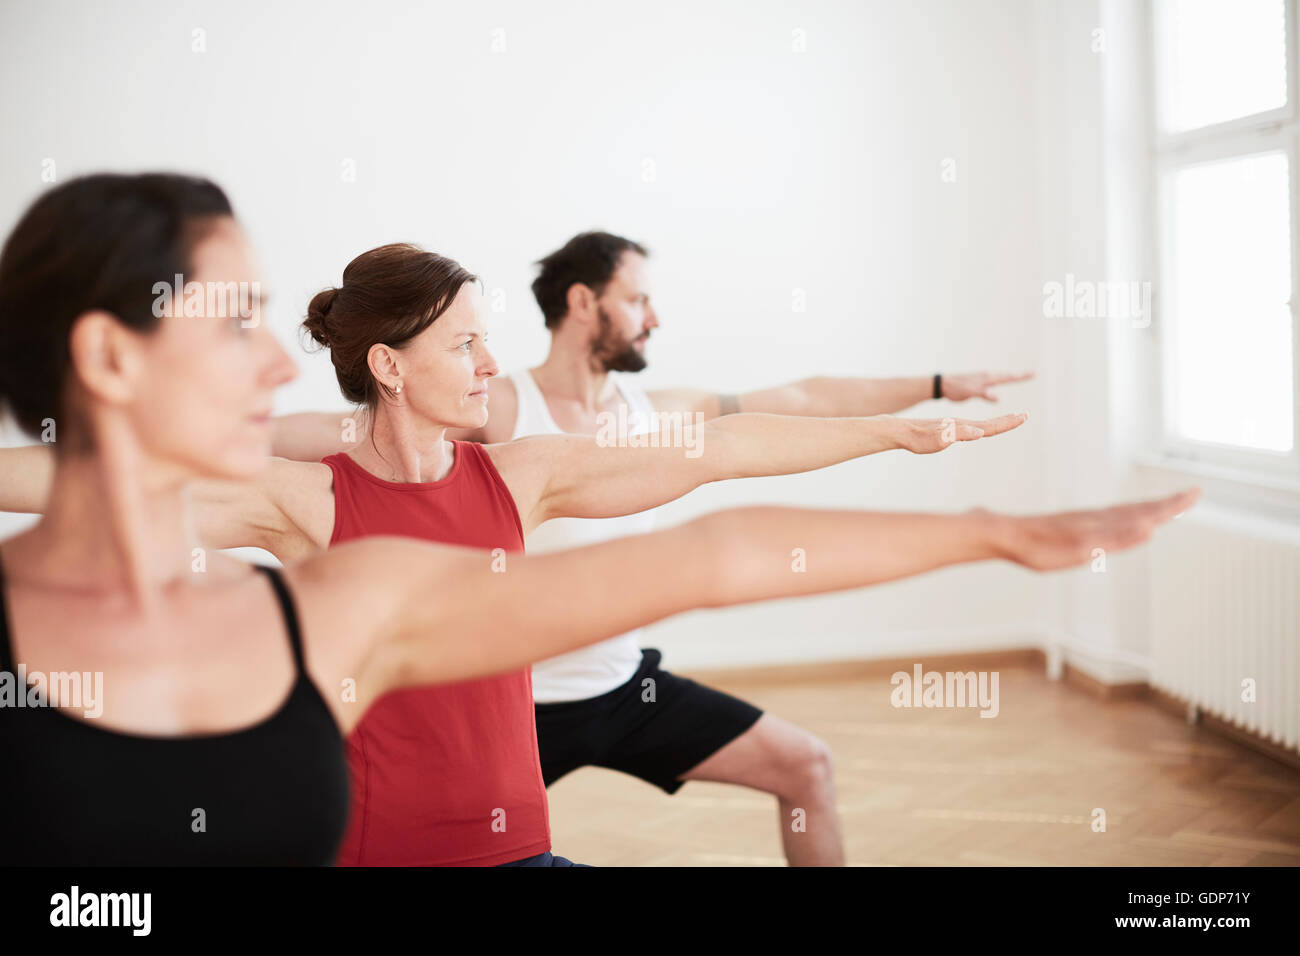 Les gens dans l'exercice studio arms open in yoga position Banque D'Images